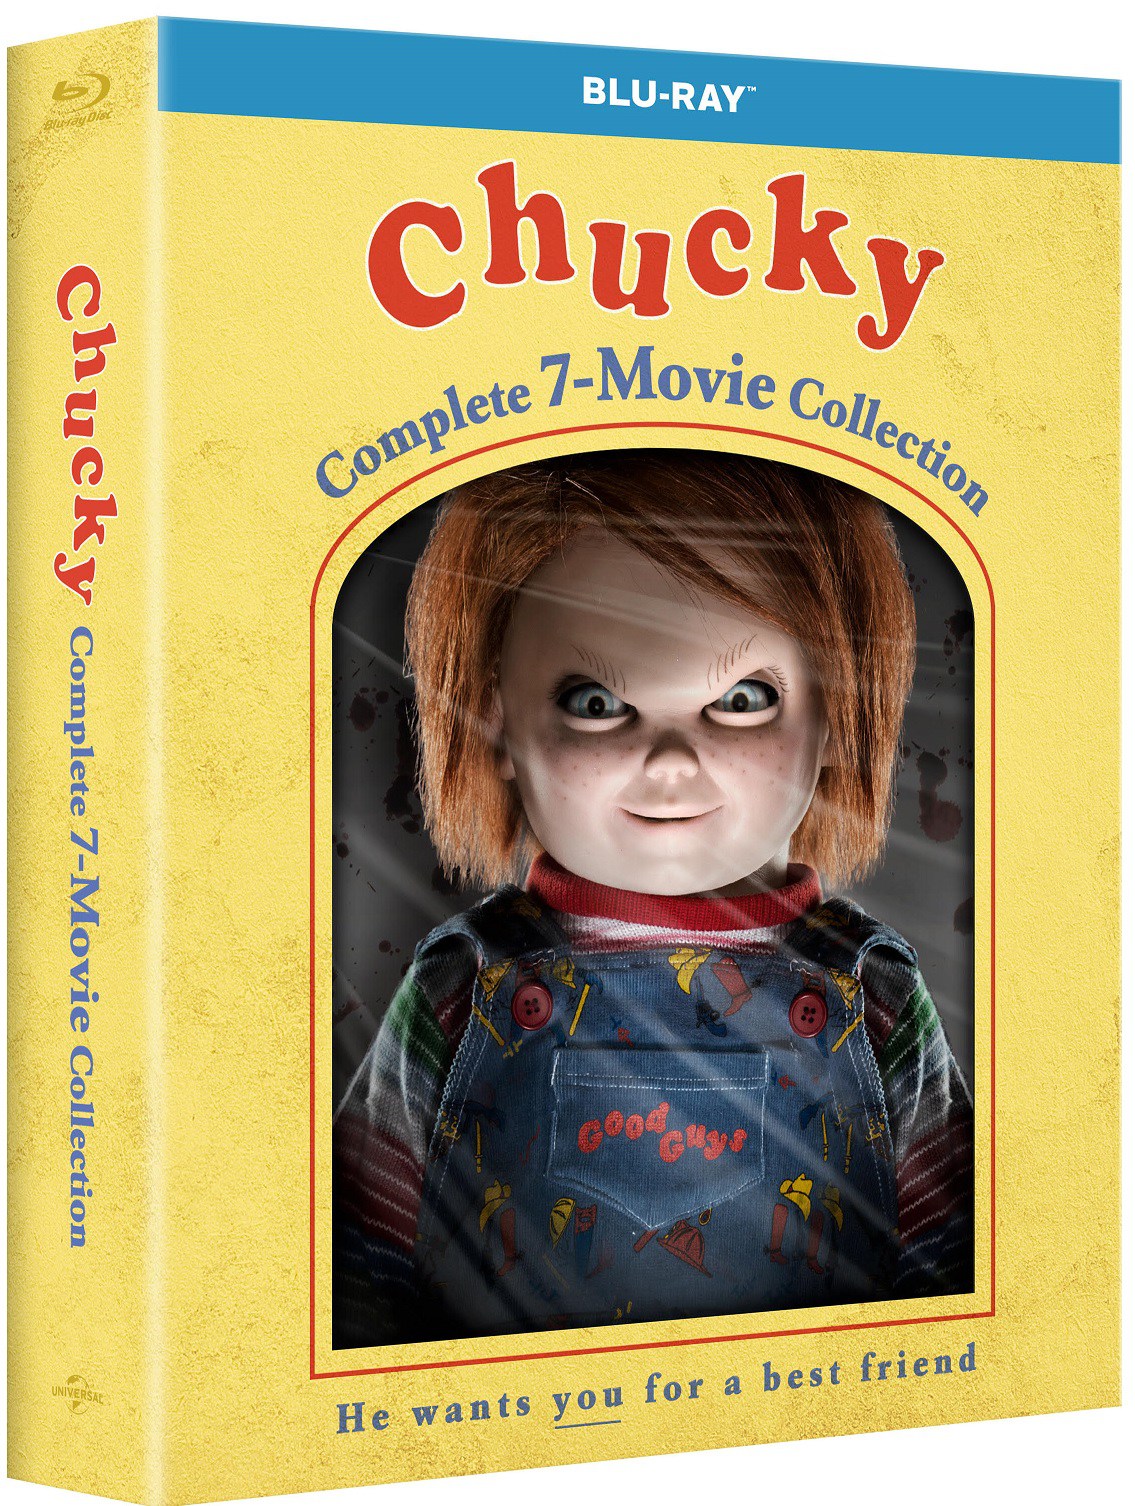 chucky 7 movie